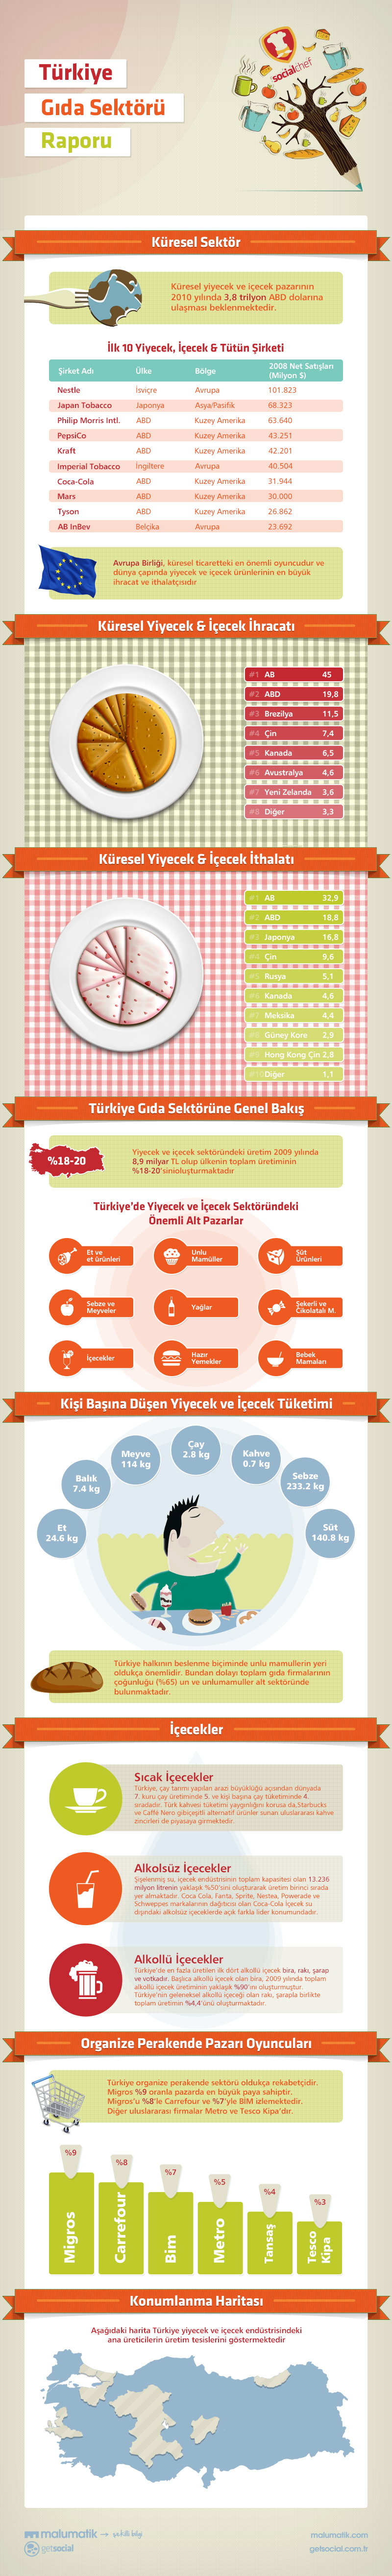 Türkiye Gıda Sektörü Raporu İnfografik